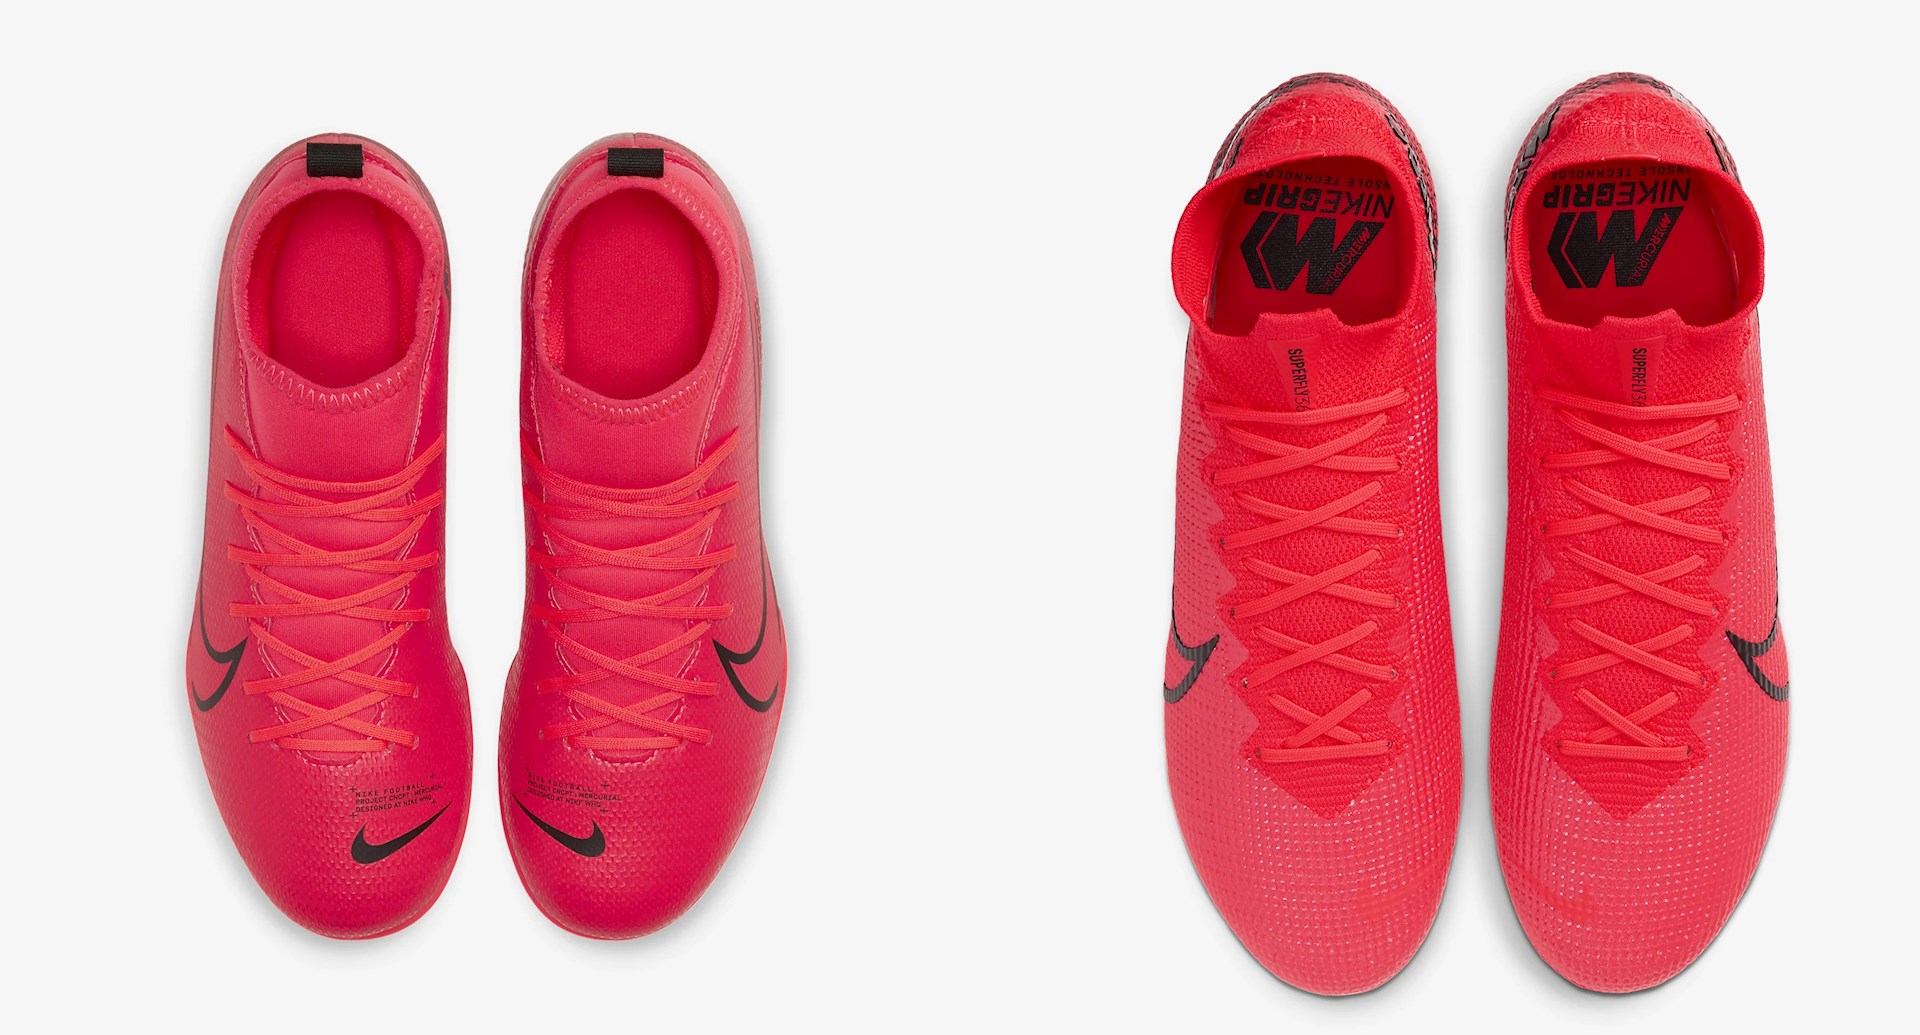 heilig Registratie Ontwapening Goedkope Nike Mercurial Superfly voetbalschoenen met sok - Voetbal-schoenen .eu